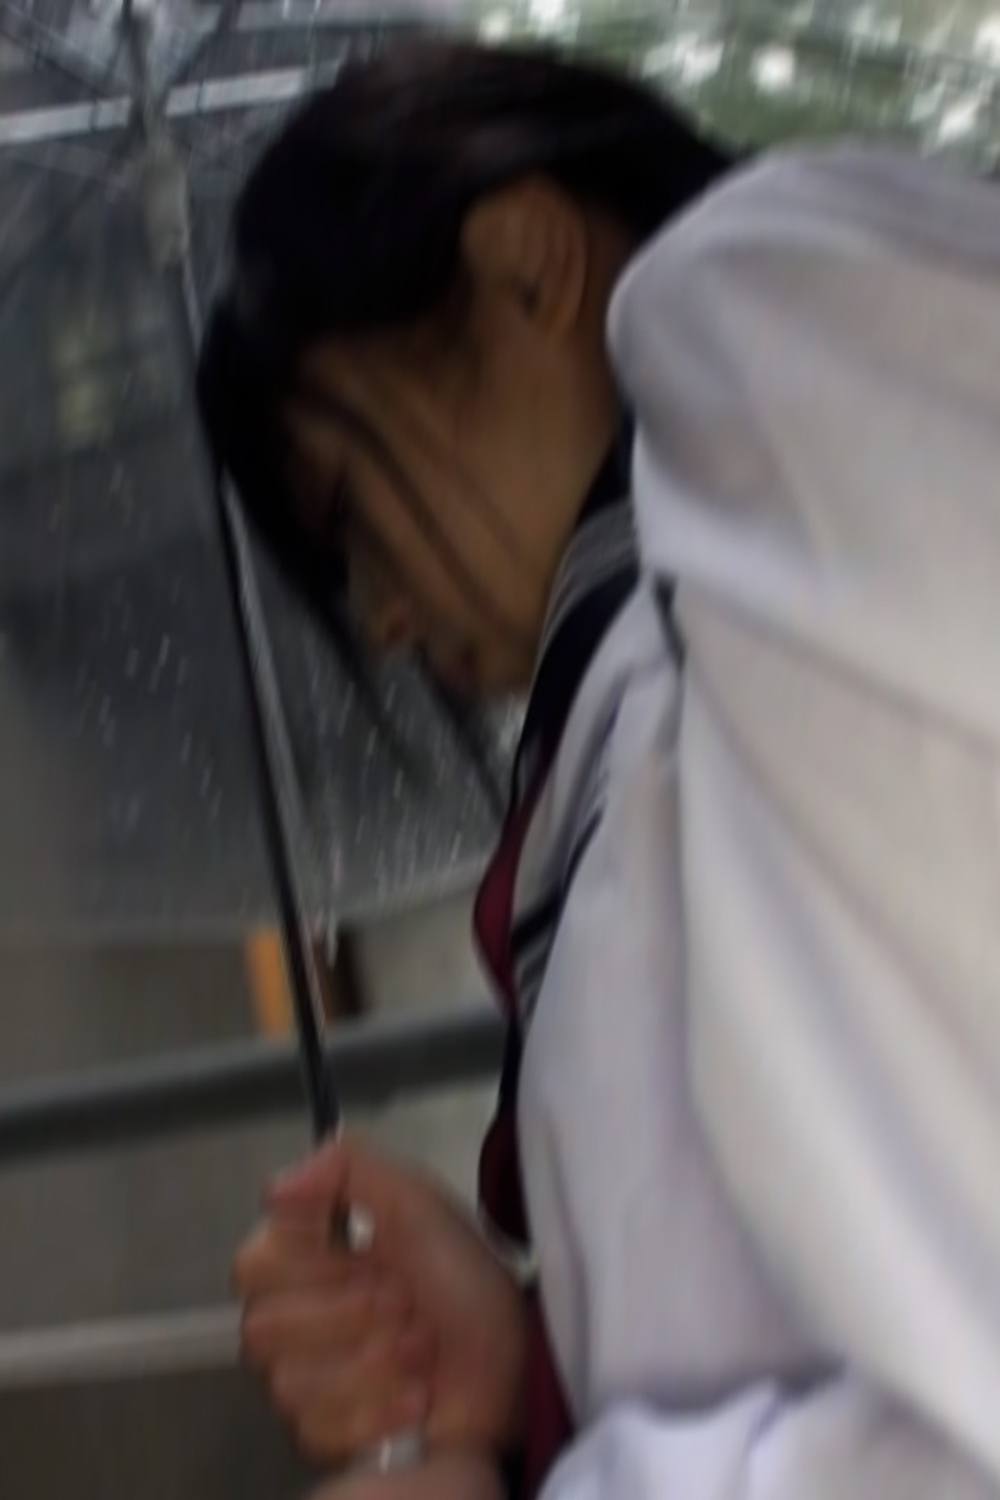 22/9、雨天、下校時間、中出しまで。埼玉在住の男性が撮影した動画データ.mp4